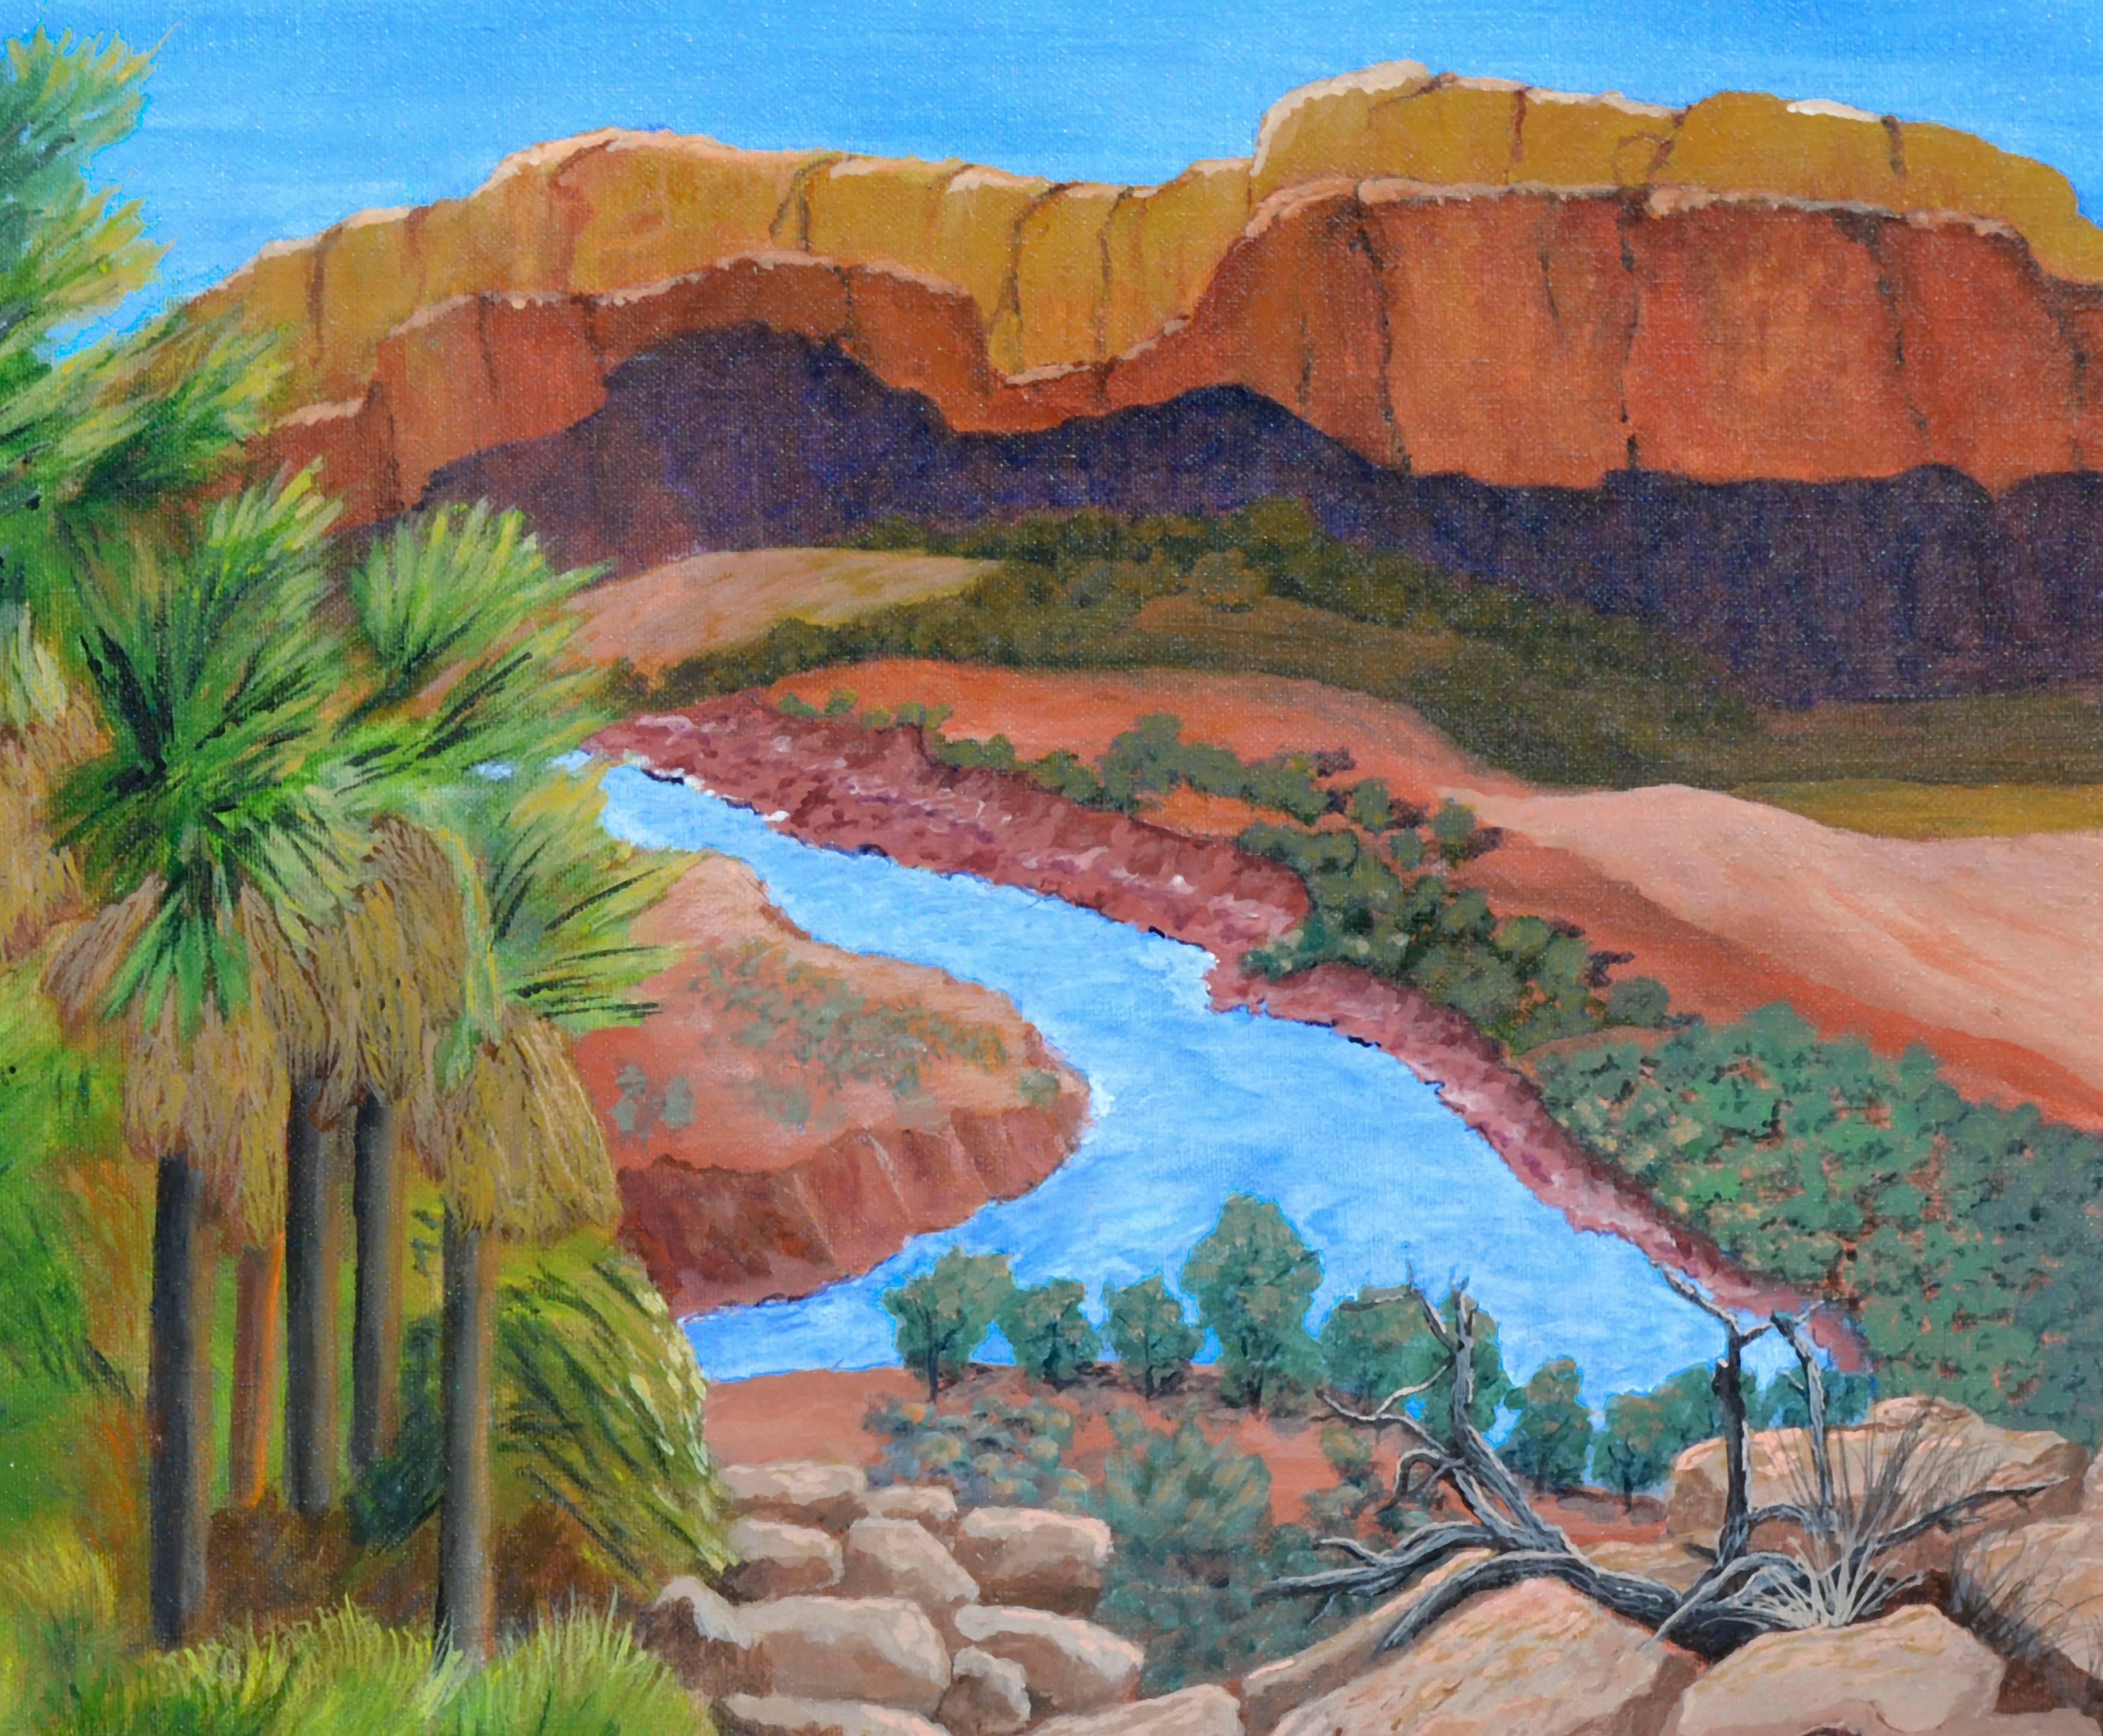 Canyon et rivière - Paysage du désert  - Painting de Clementine Cote